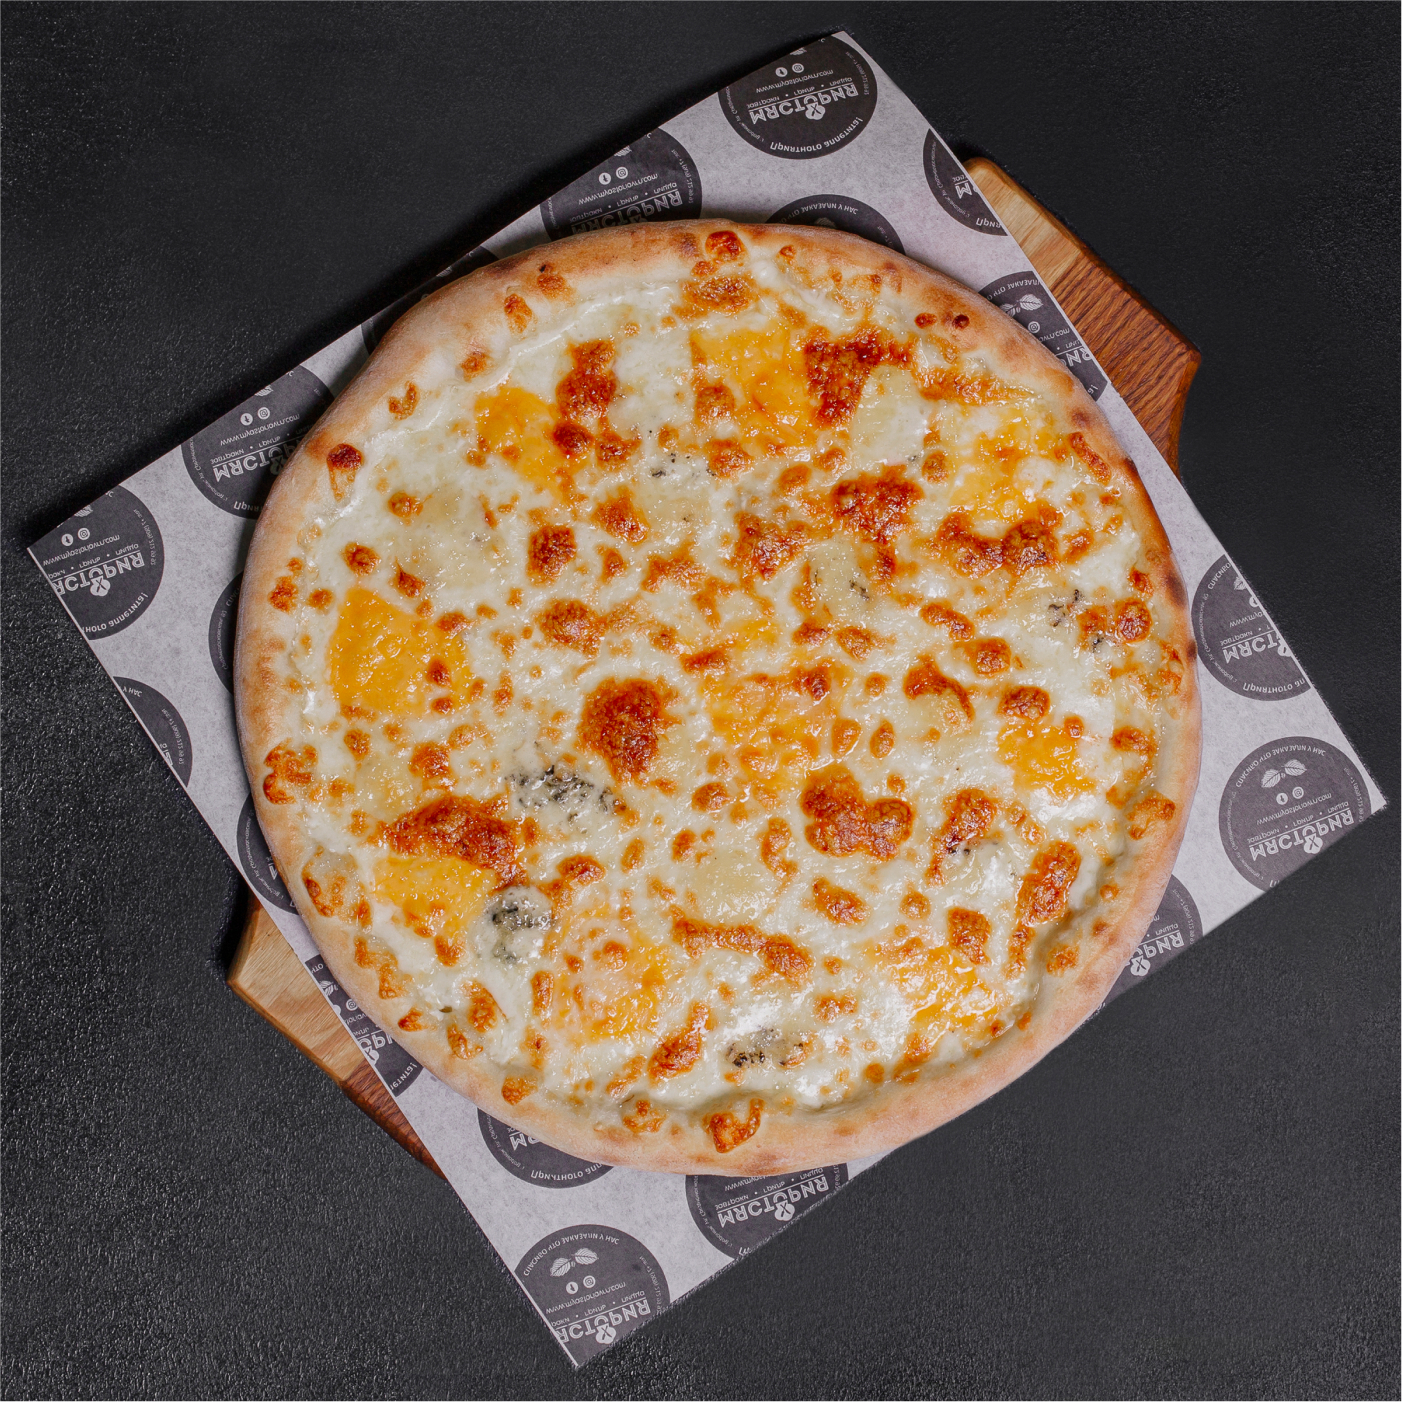 додо пицца четыре сыра отзывы фото 116